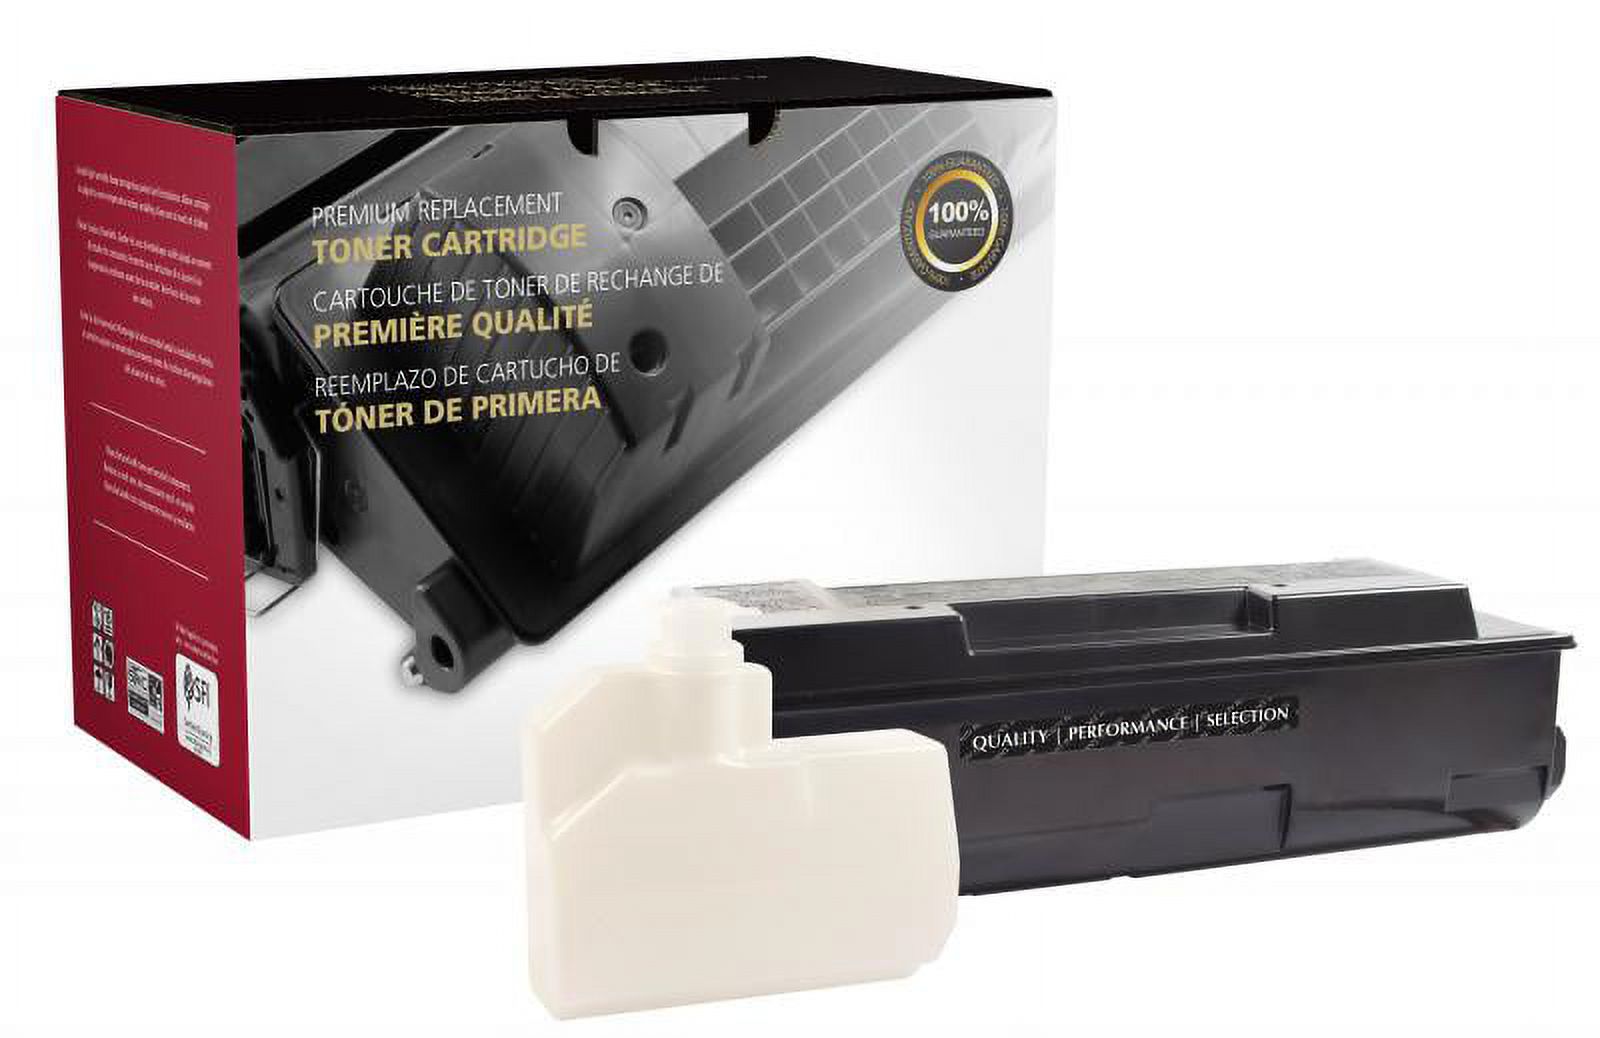 Clover Imaging Remanufactured Toner Cartridge for Kyocera TK-312 - image 1 of 2